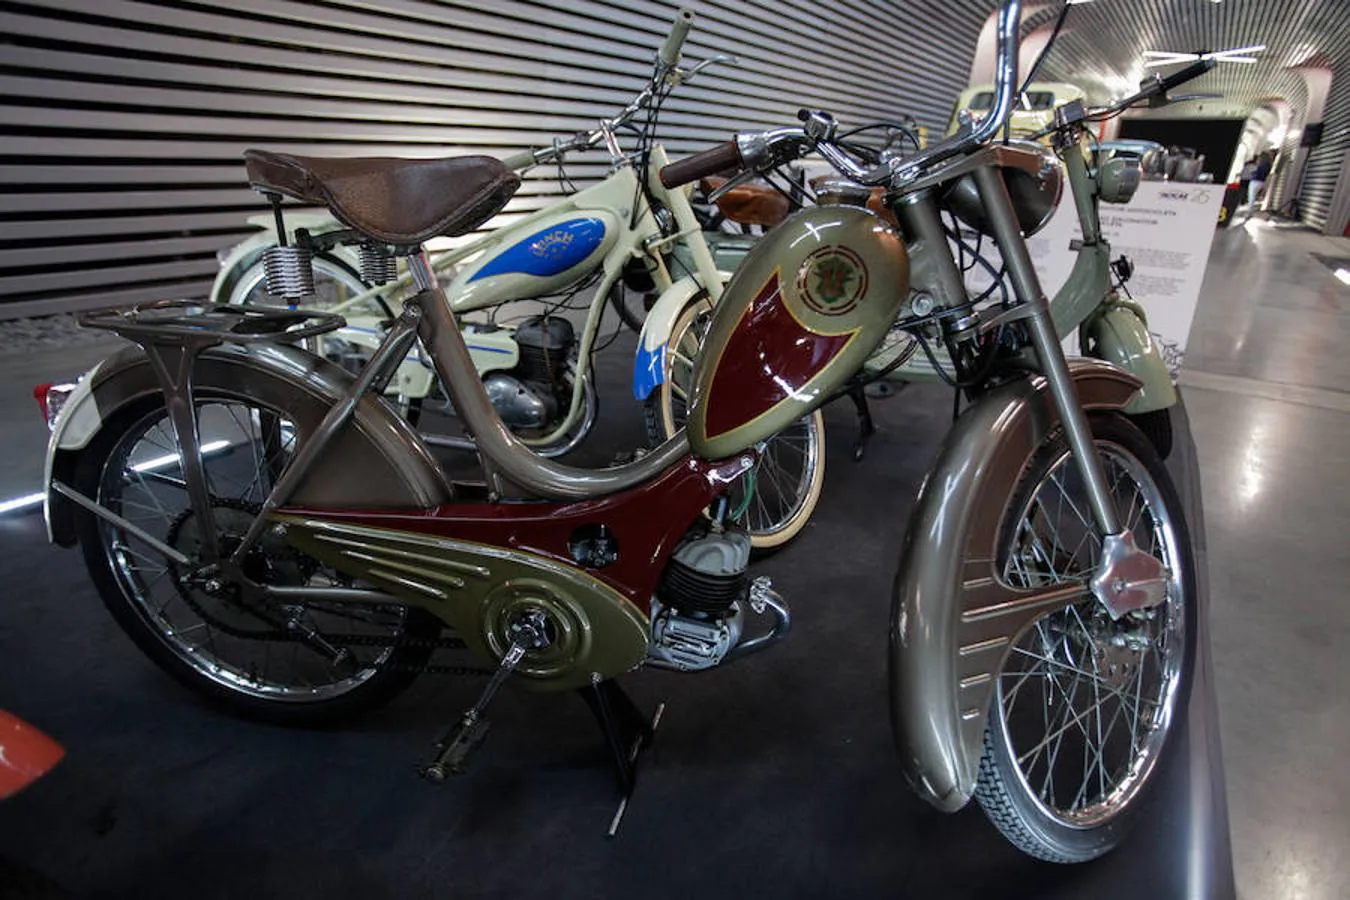 BH: La fábrica de bicicletas BH fabricó entre el 56 y el 62 un robusto ciclomotor de diseño propio y motor francés Mistral fabricado bajo licencia. Provenientes de Eibar, con posteridad pasaron a Vitoria como muchas otras industrias del valle de Deba.